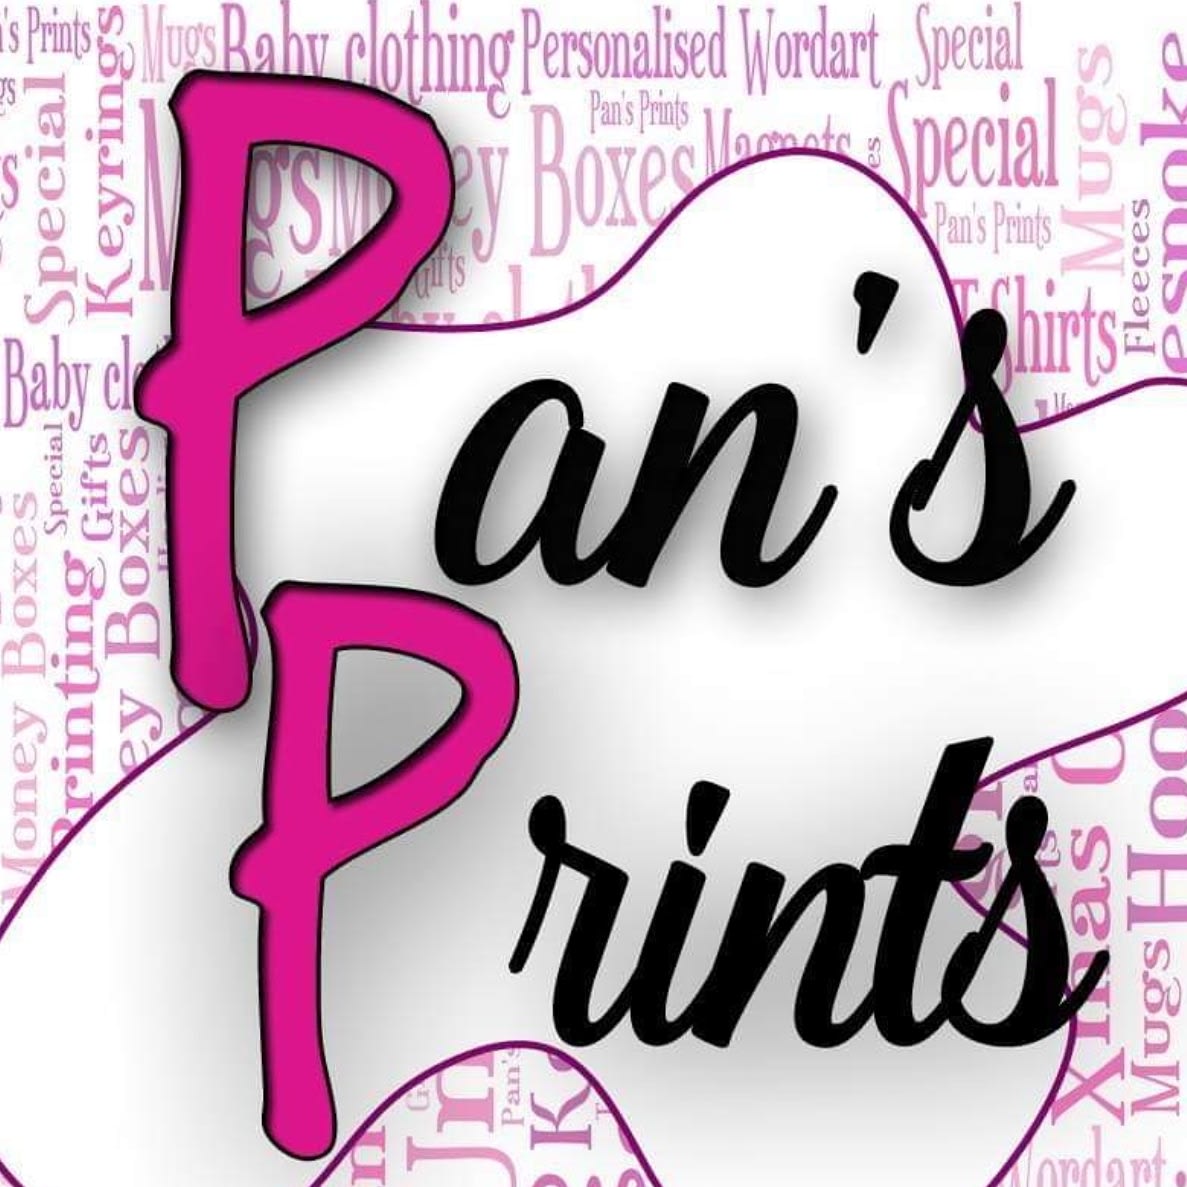 Pan's Prints